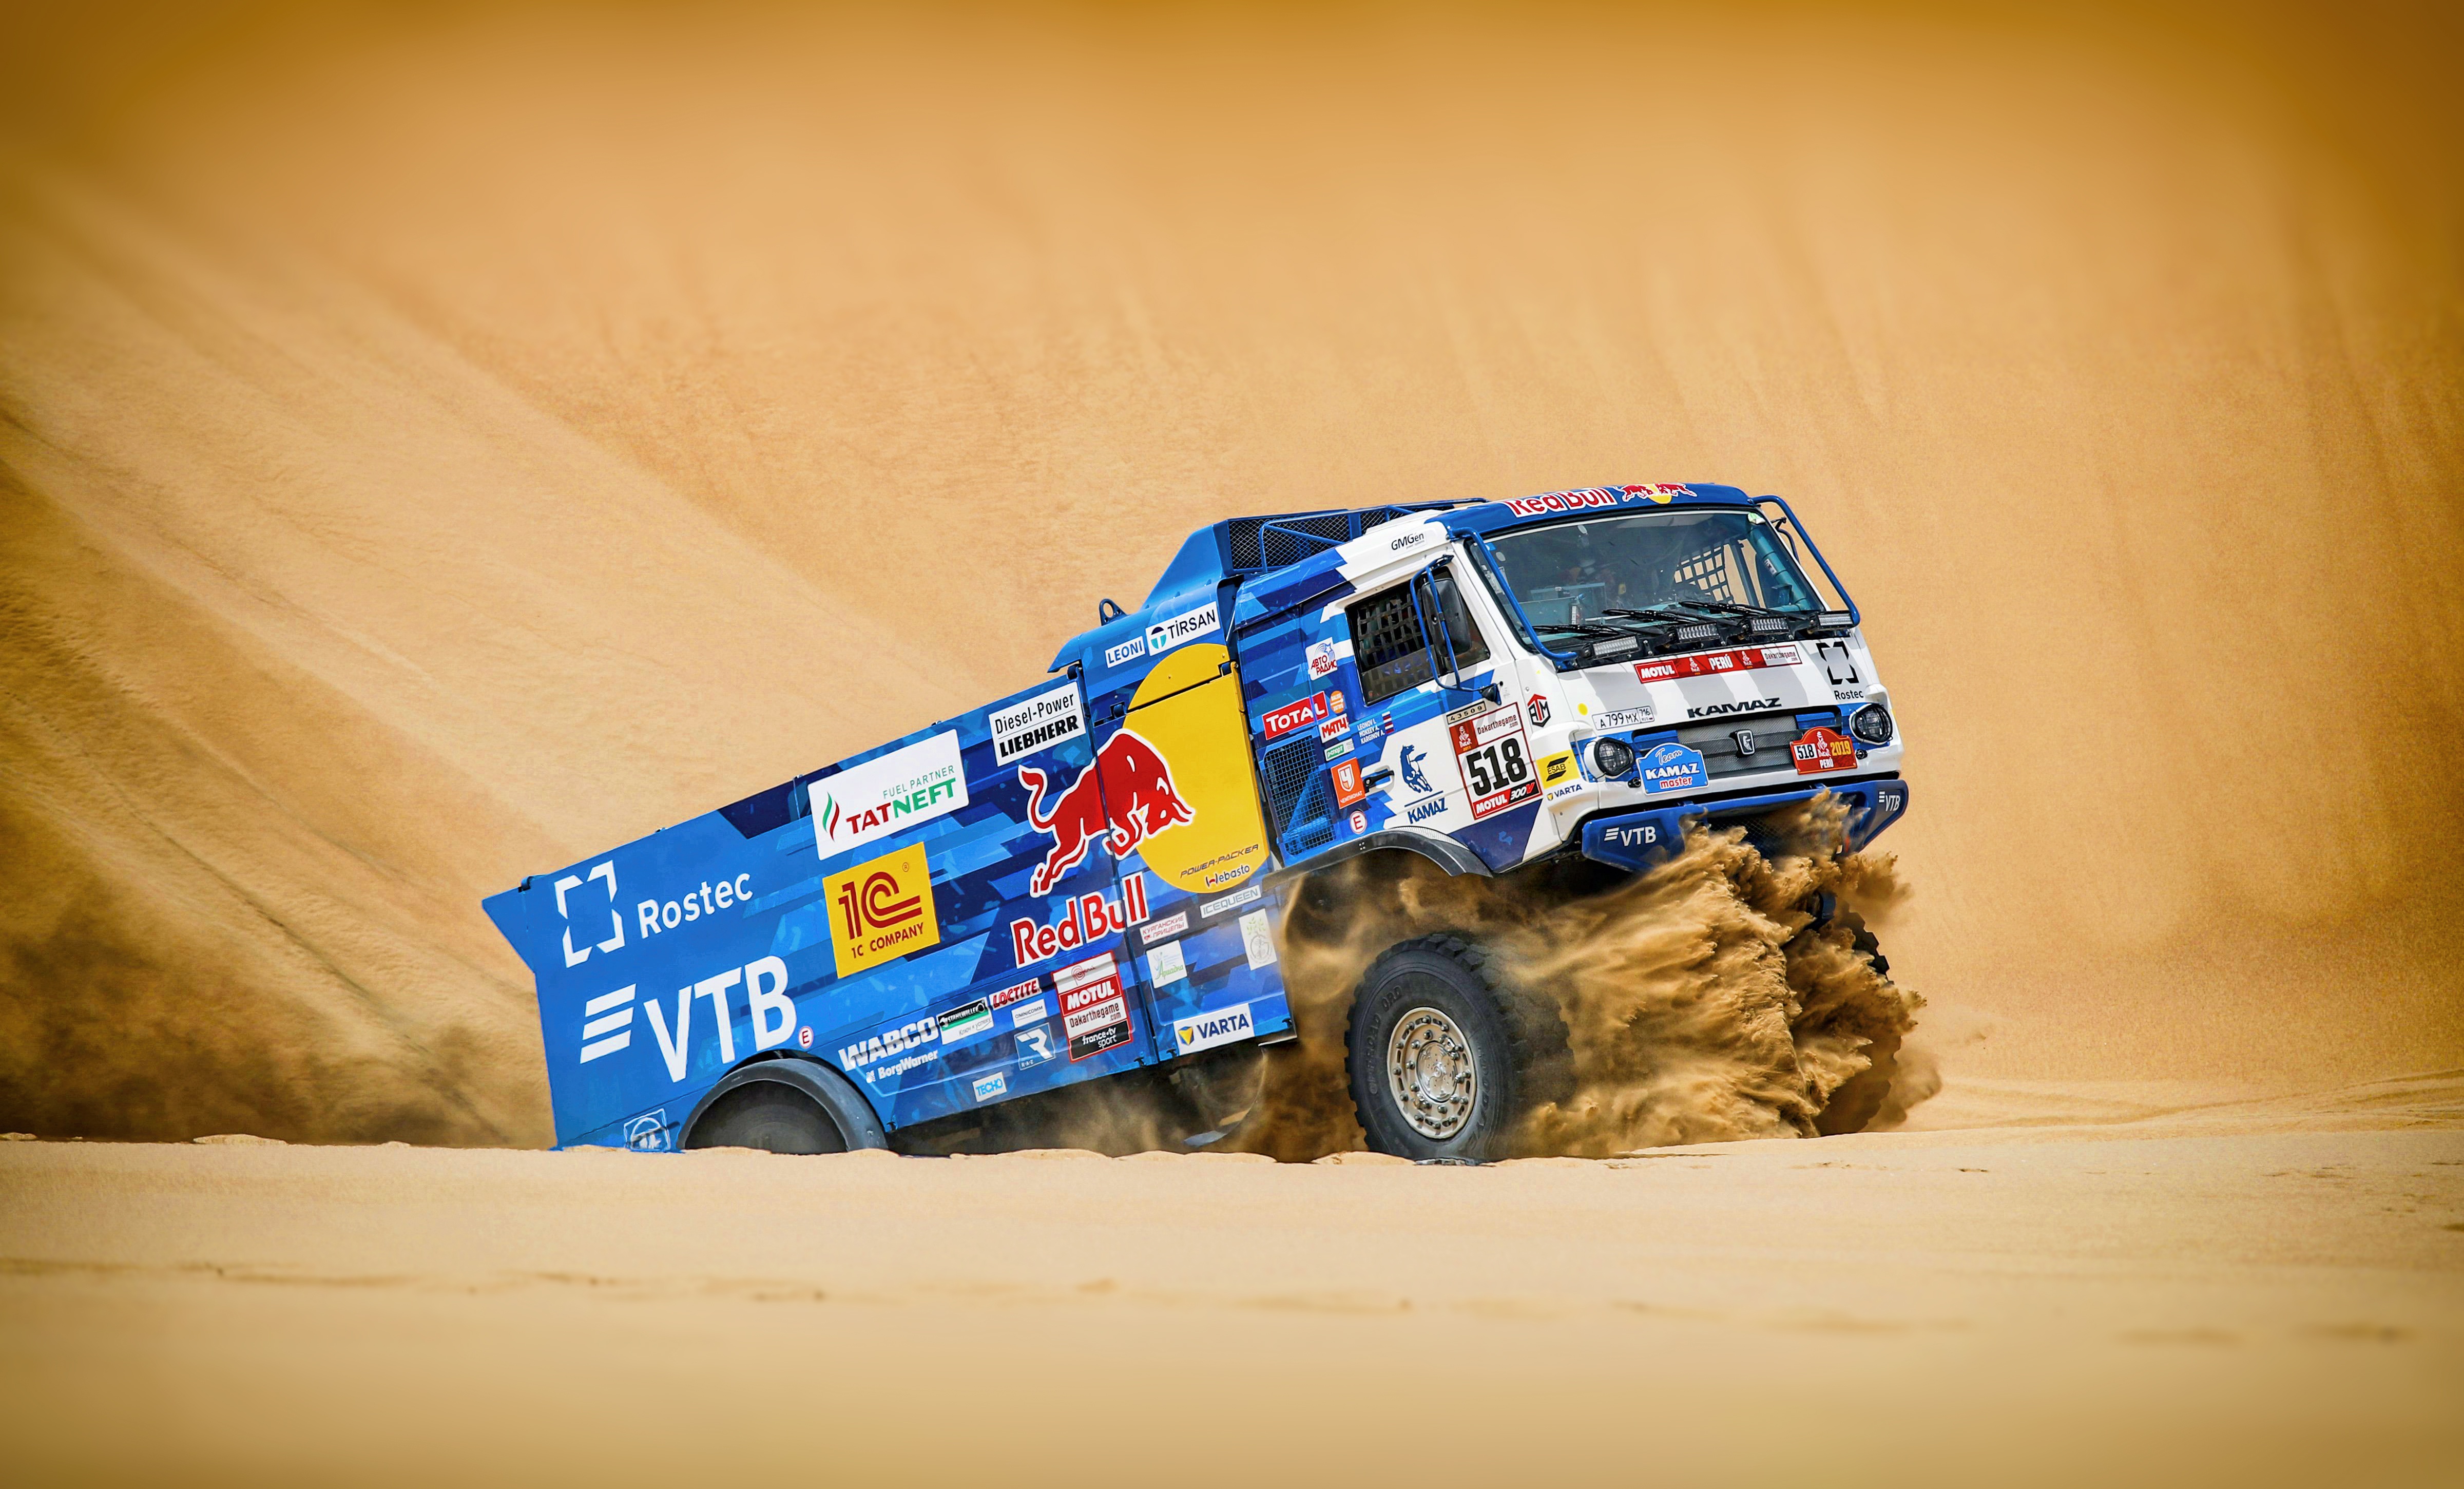 Desert Rallying Sand Truck Vehicle 4800x2900